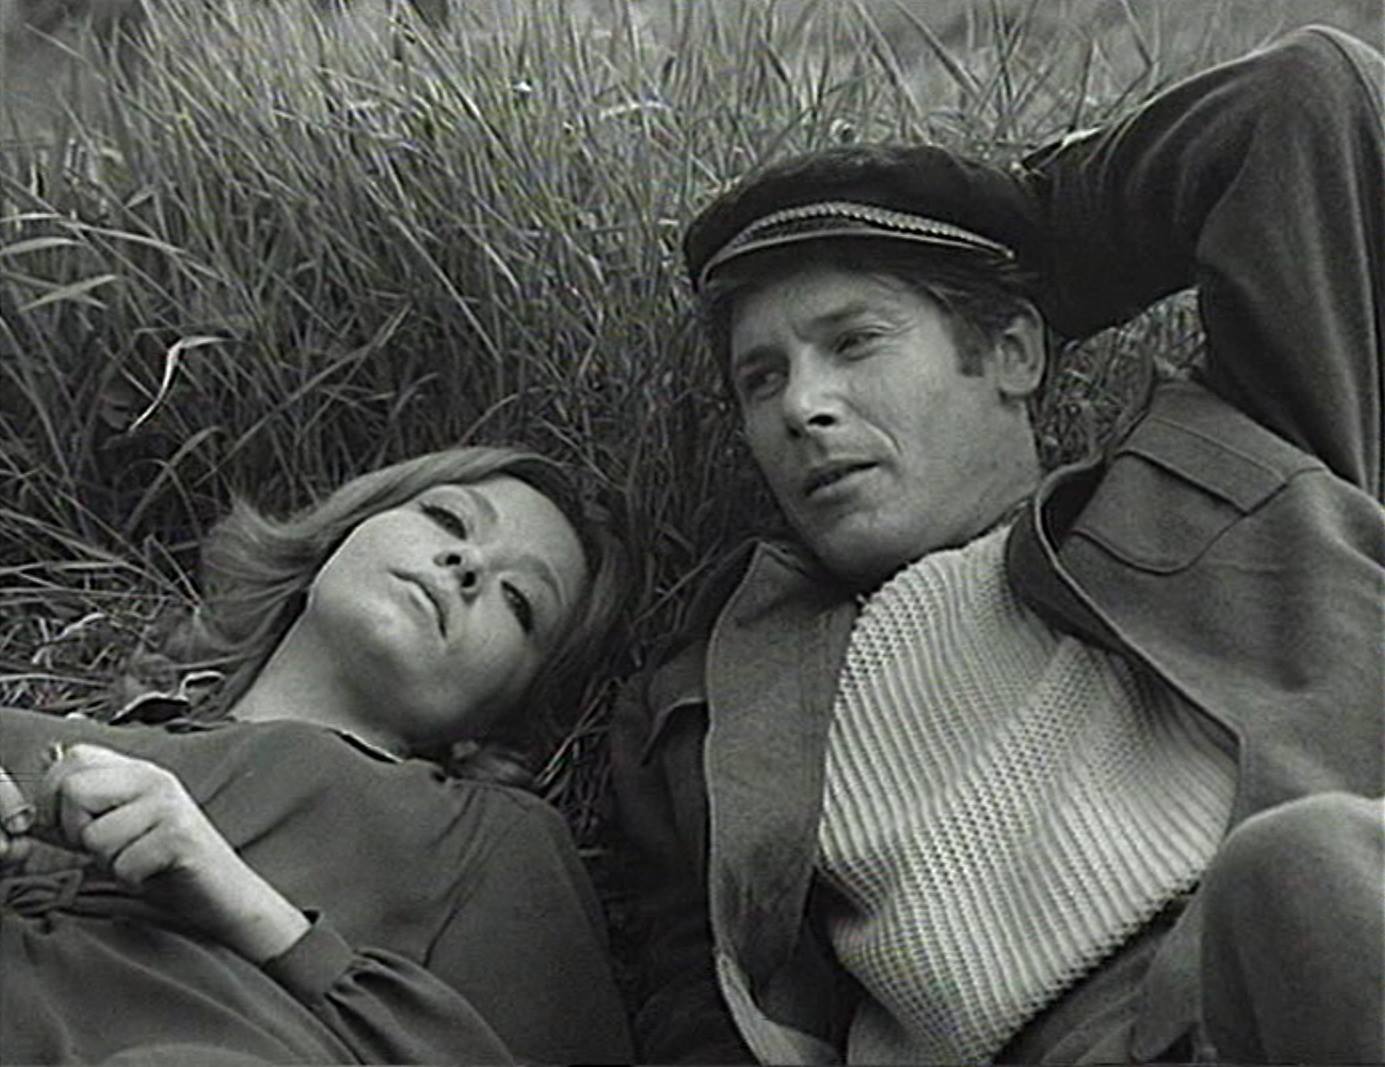 Film Zaseda iz 1969. godine jedan je od najpoznatijih ostvarenja Crnog talasa, čuvenog razdoblja u jugoslavenskoj kinematografiji. Dravić igra glavnu žensku ulogu, a njen partner je hrvatski glumac Ivica Vidović. 